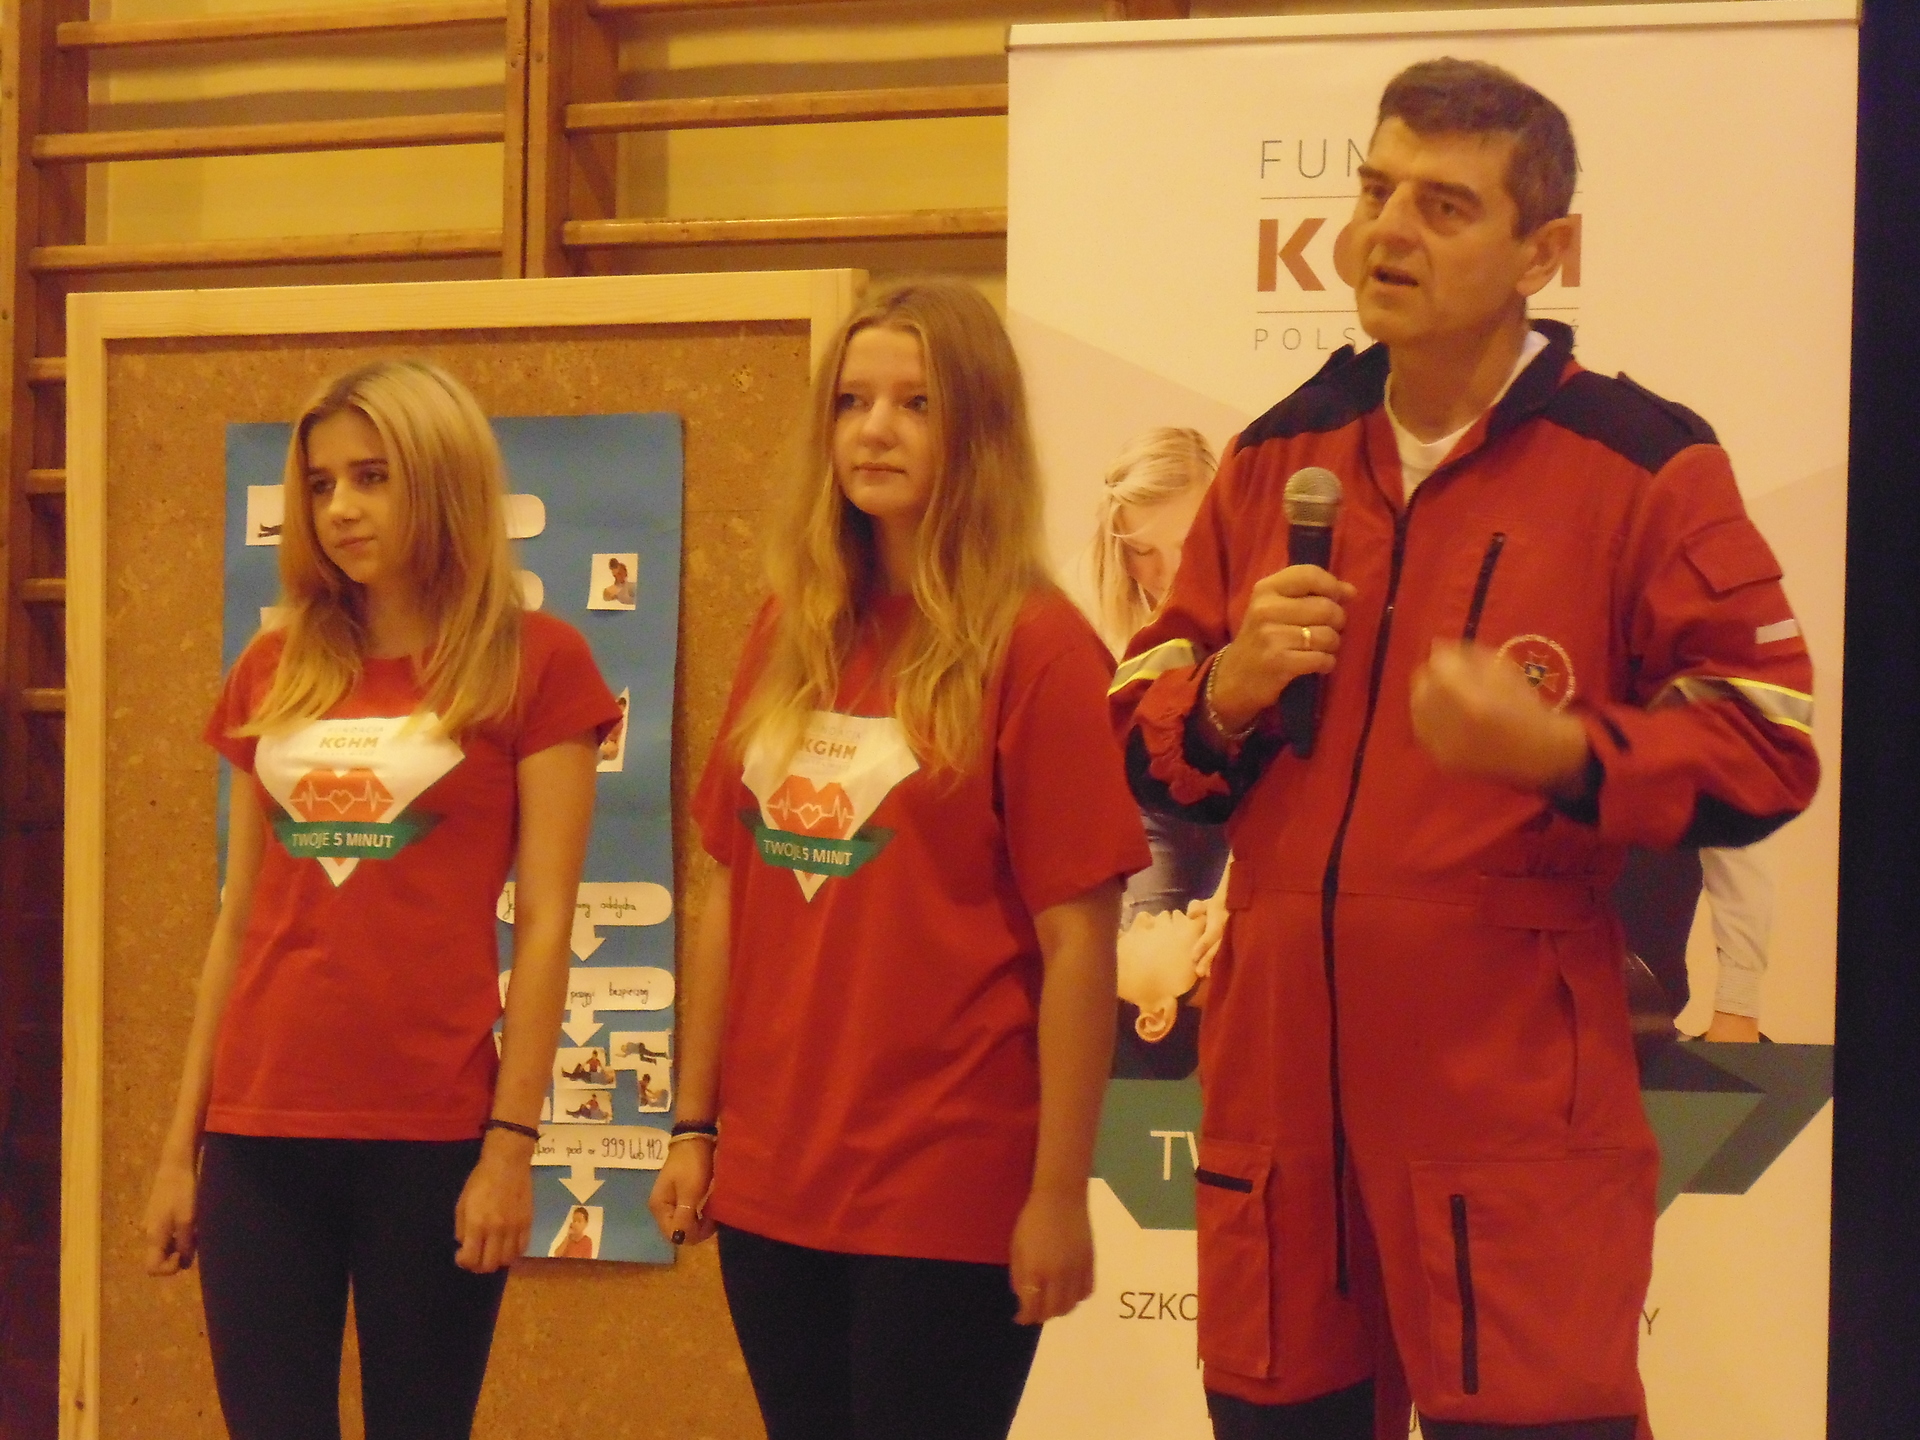 GŁOGÓW/REGION. Nauczą młodzież, jak ratować zdrowie i życie (VIDEO)